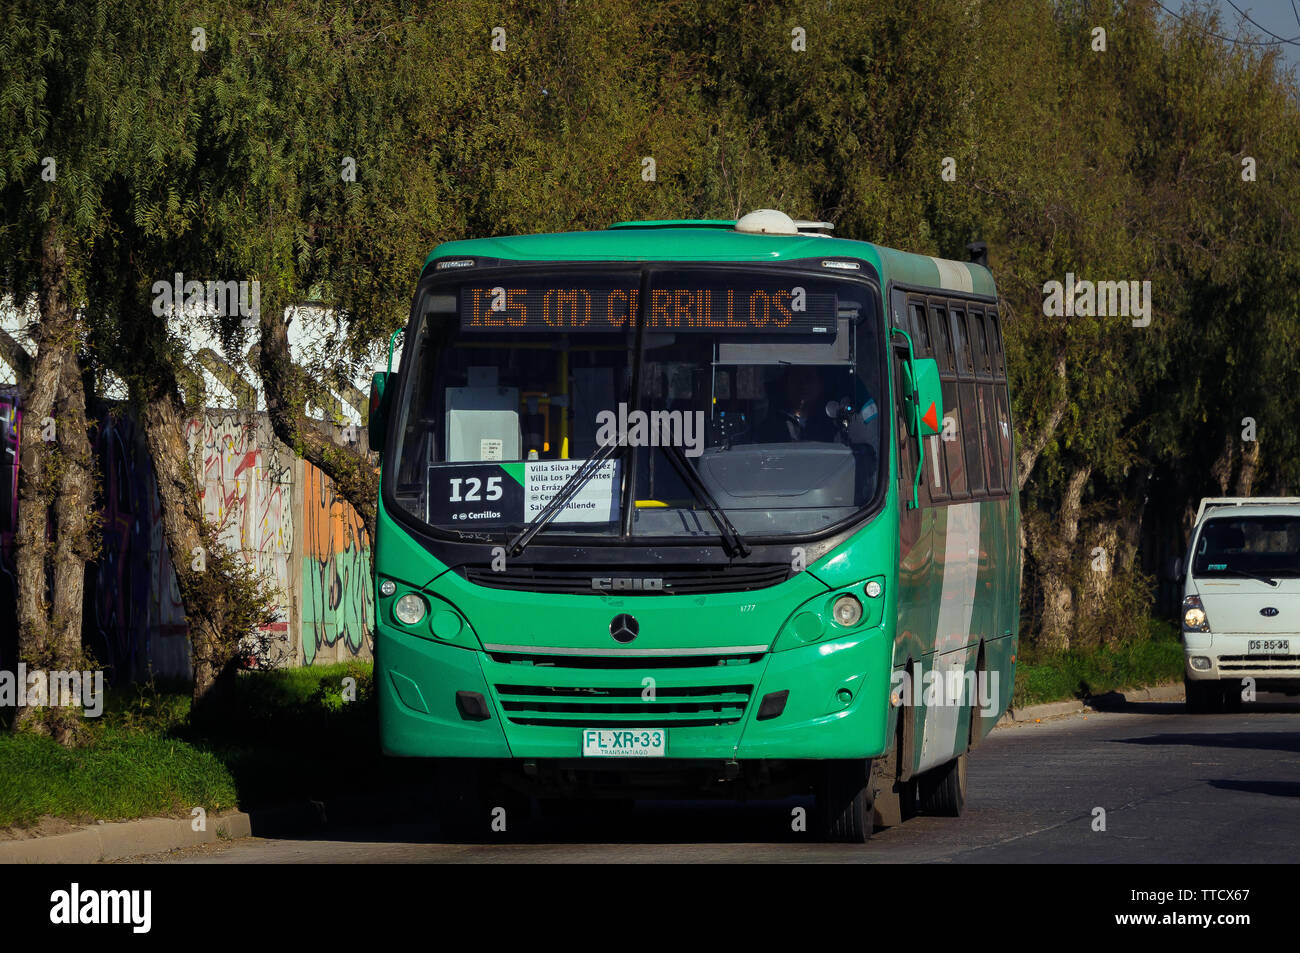 SANTIAGO DEL CILE - Luglio 2018: Transantiago bus sul percorso verso la sua destinazione finale, Cerrillos station Foto Stock